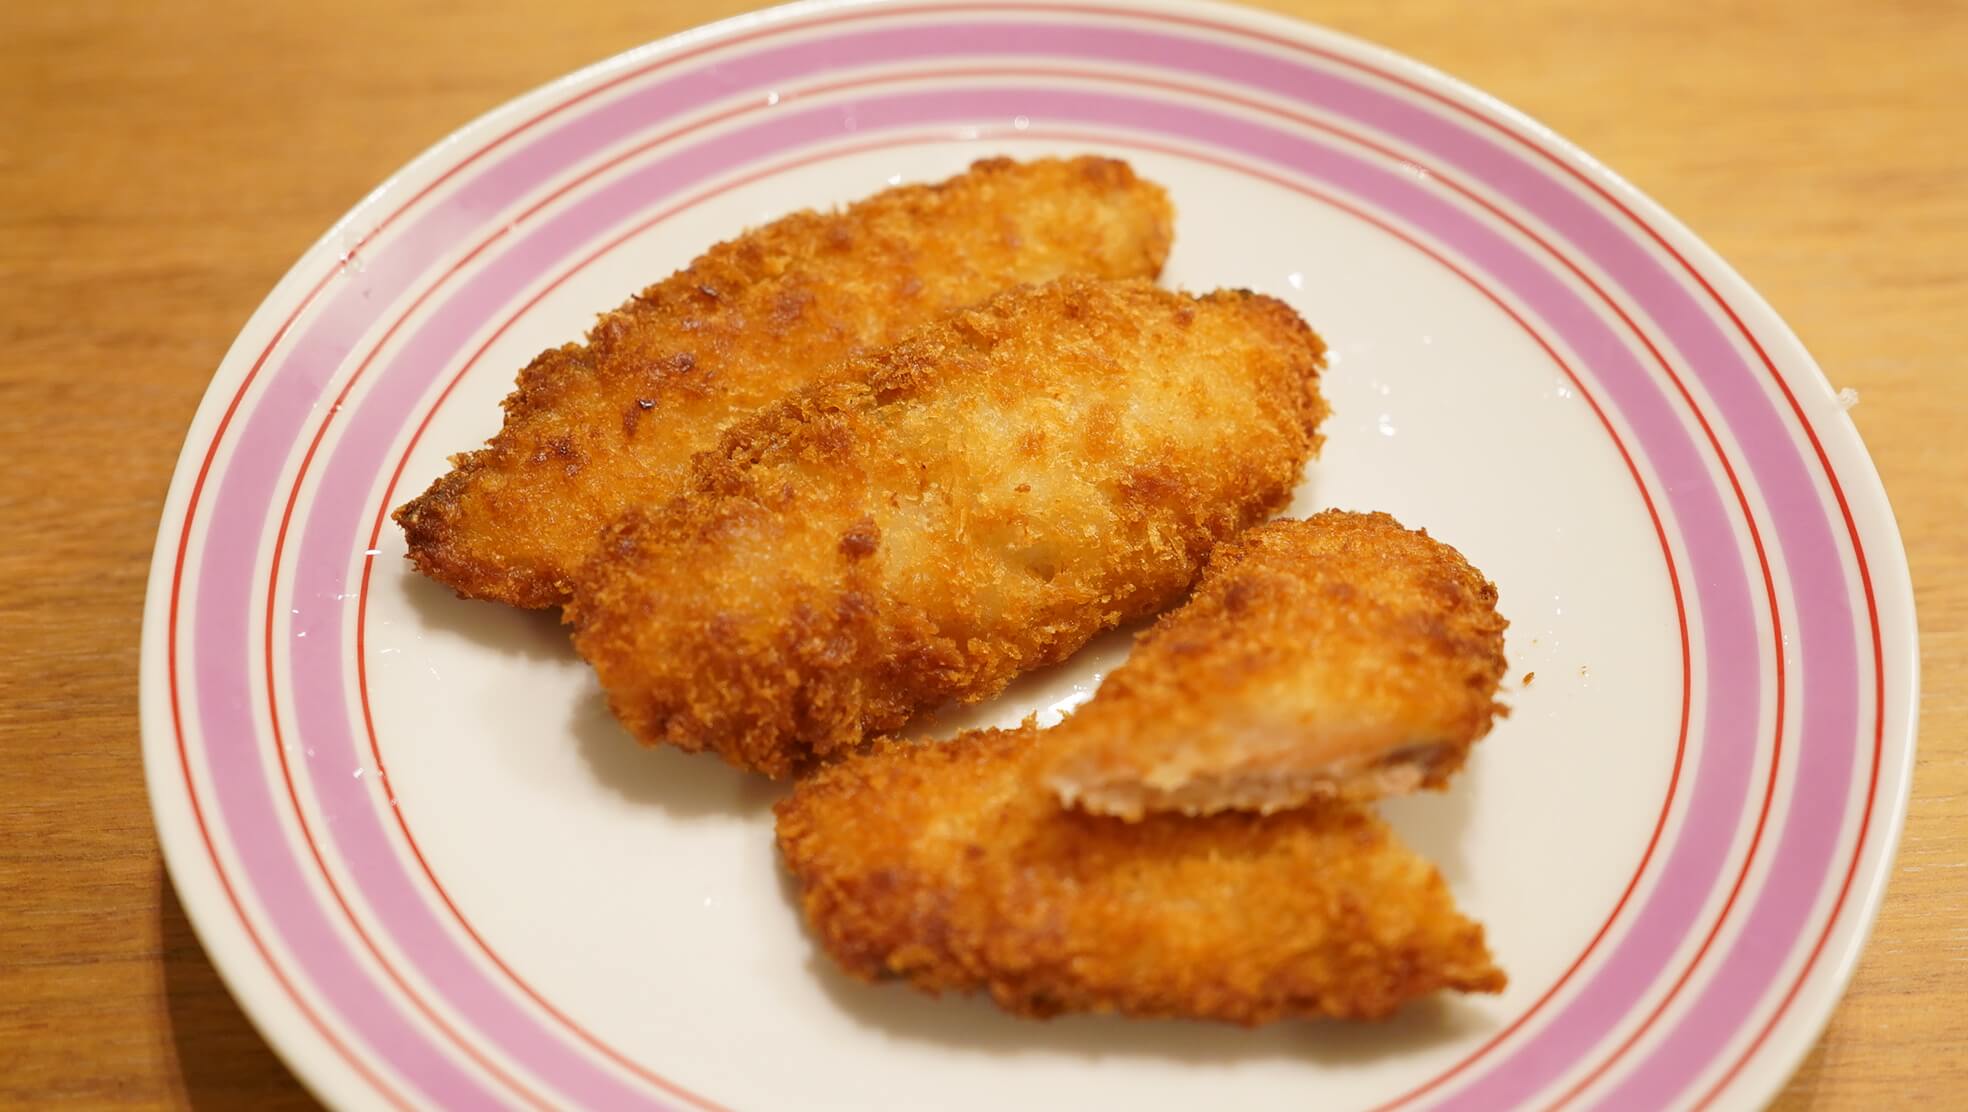 生協coop宅配の冷凍食品「秋鮭フライ」を皿に盛りつけた写真